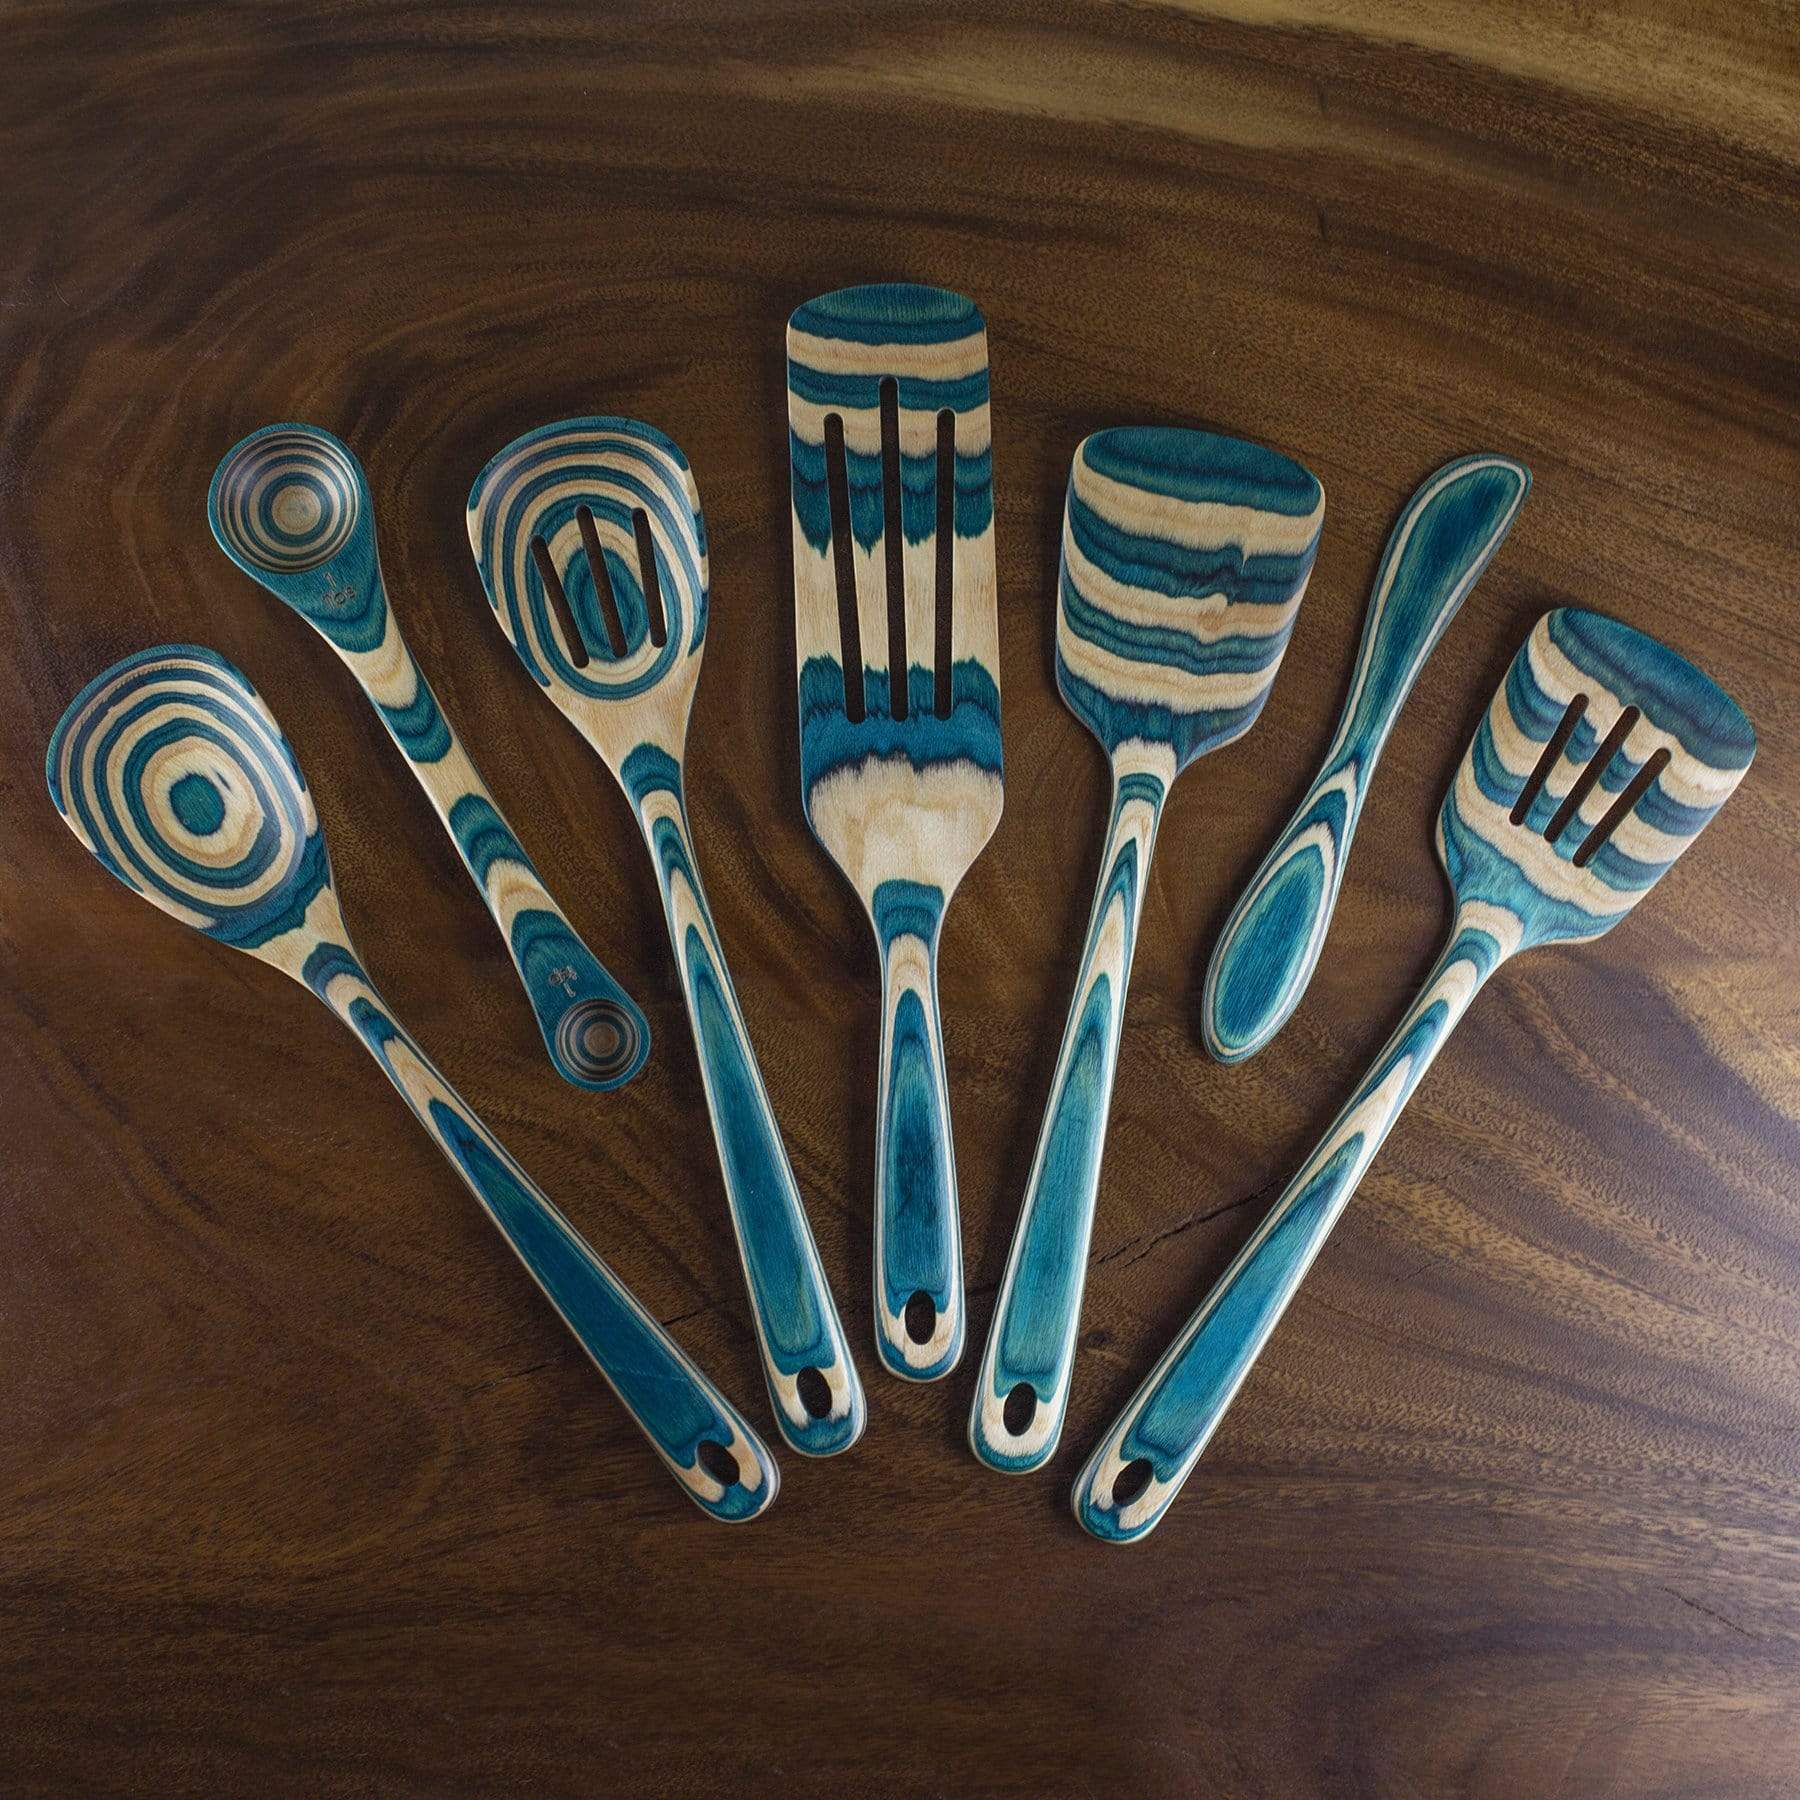 Spoon, utensil